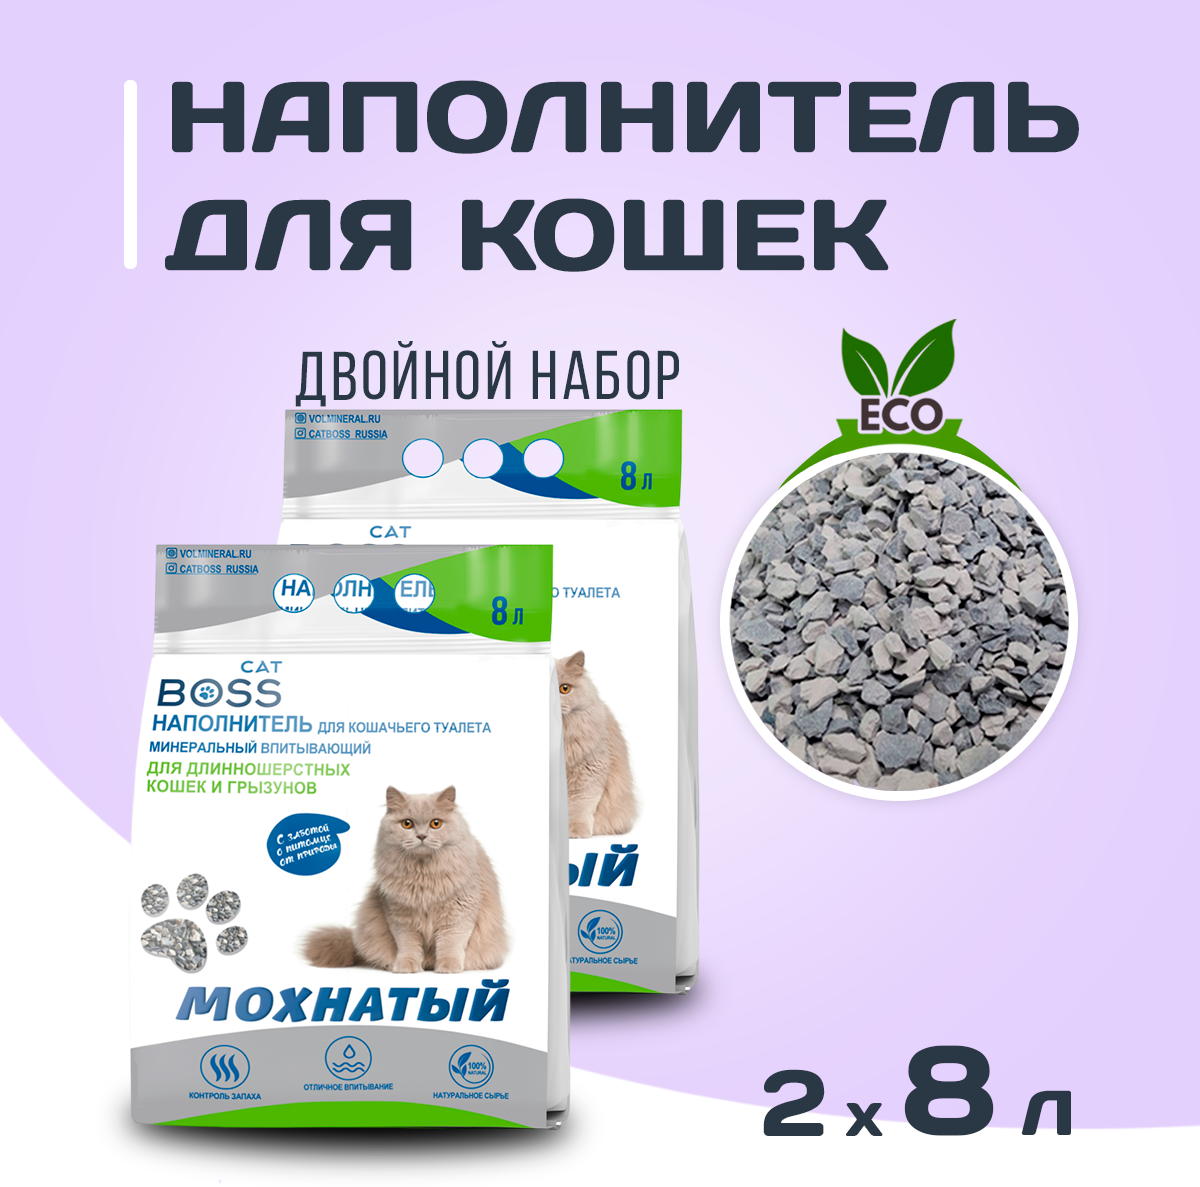 Наполнитель для кошачьего туалета минеральный / длинношерстные кошки и грызуны (мохнатый) CatBoss, 16л. (8лх2)